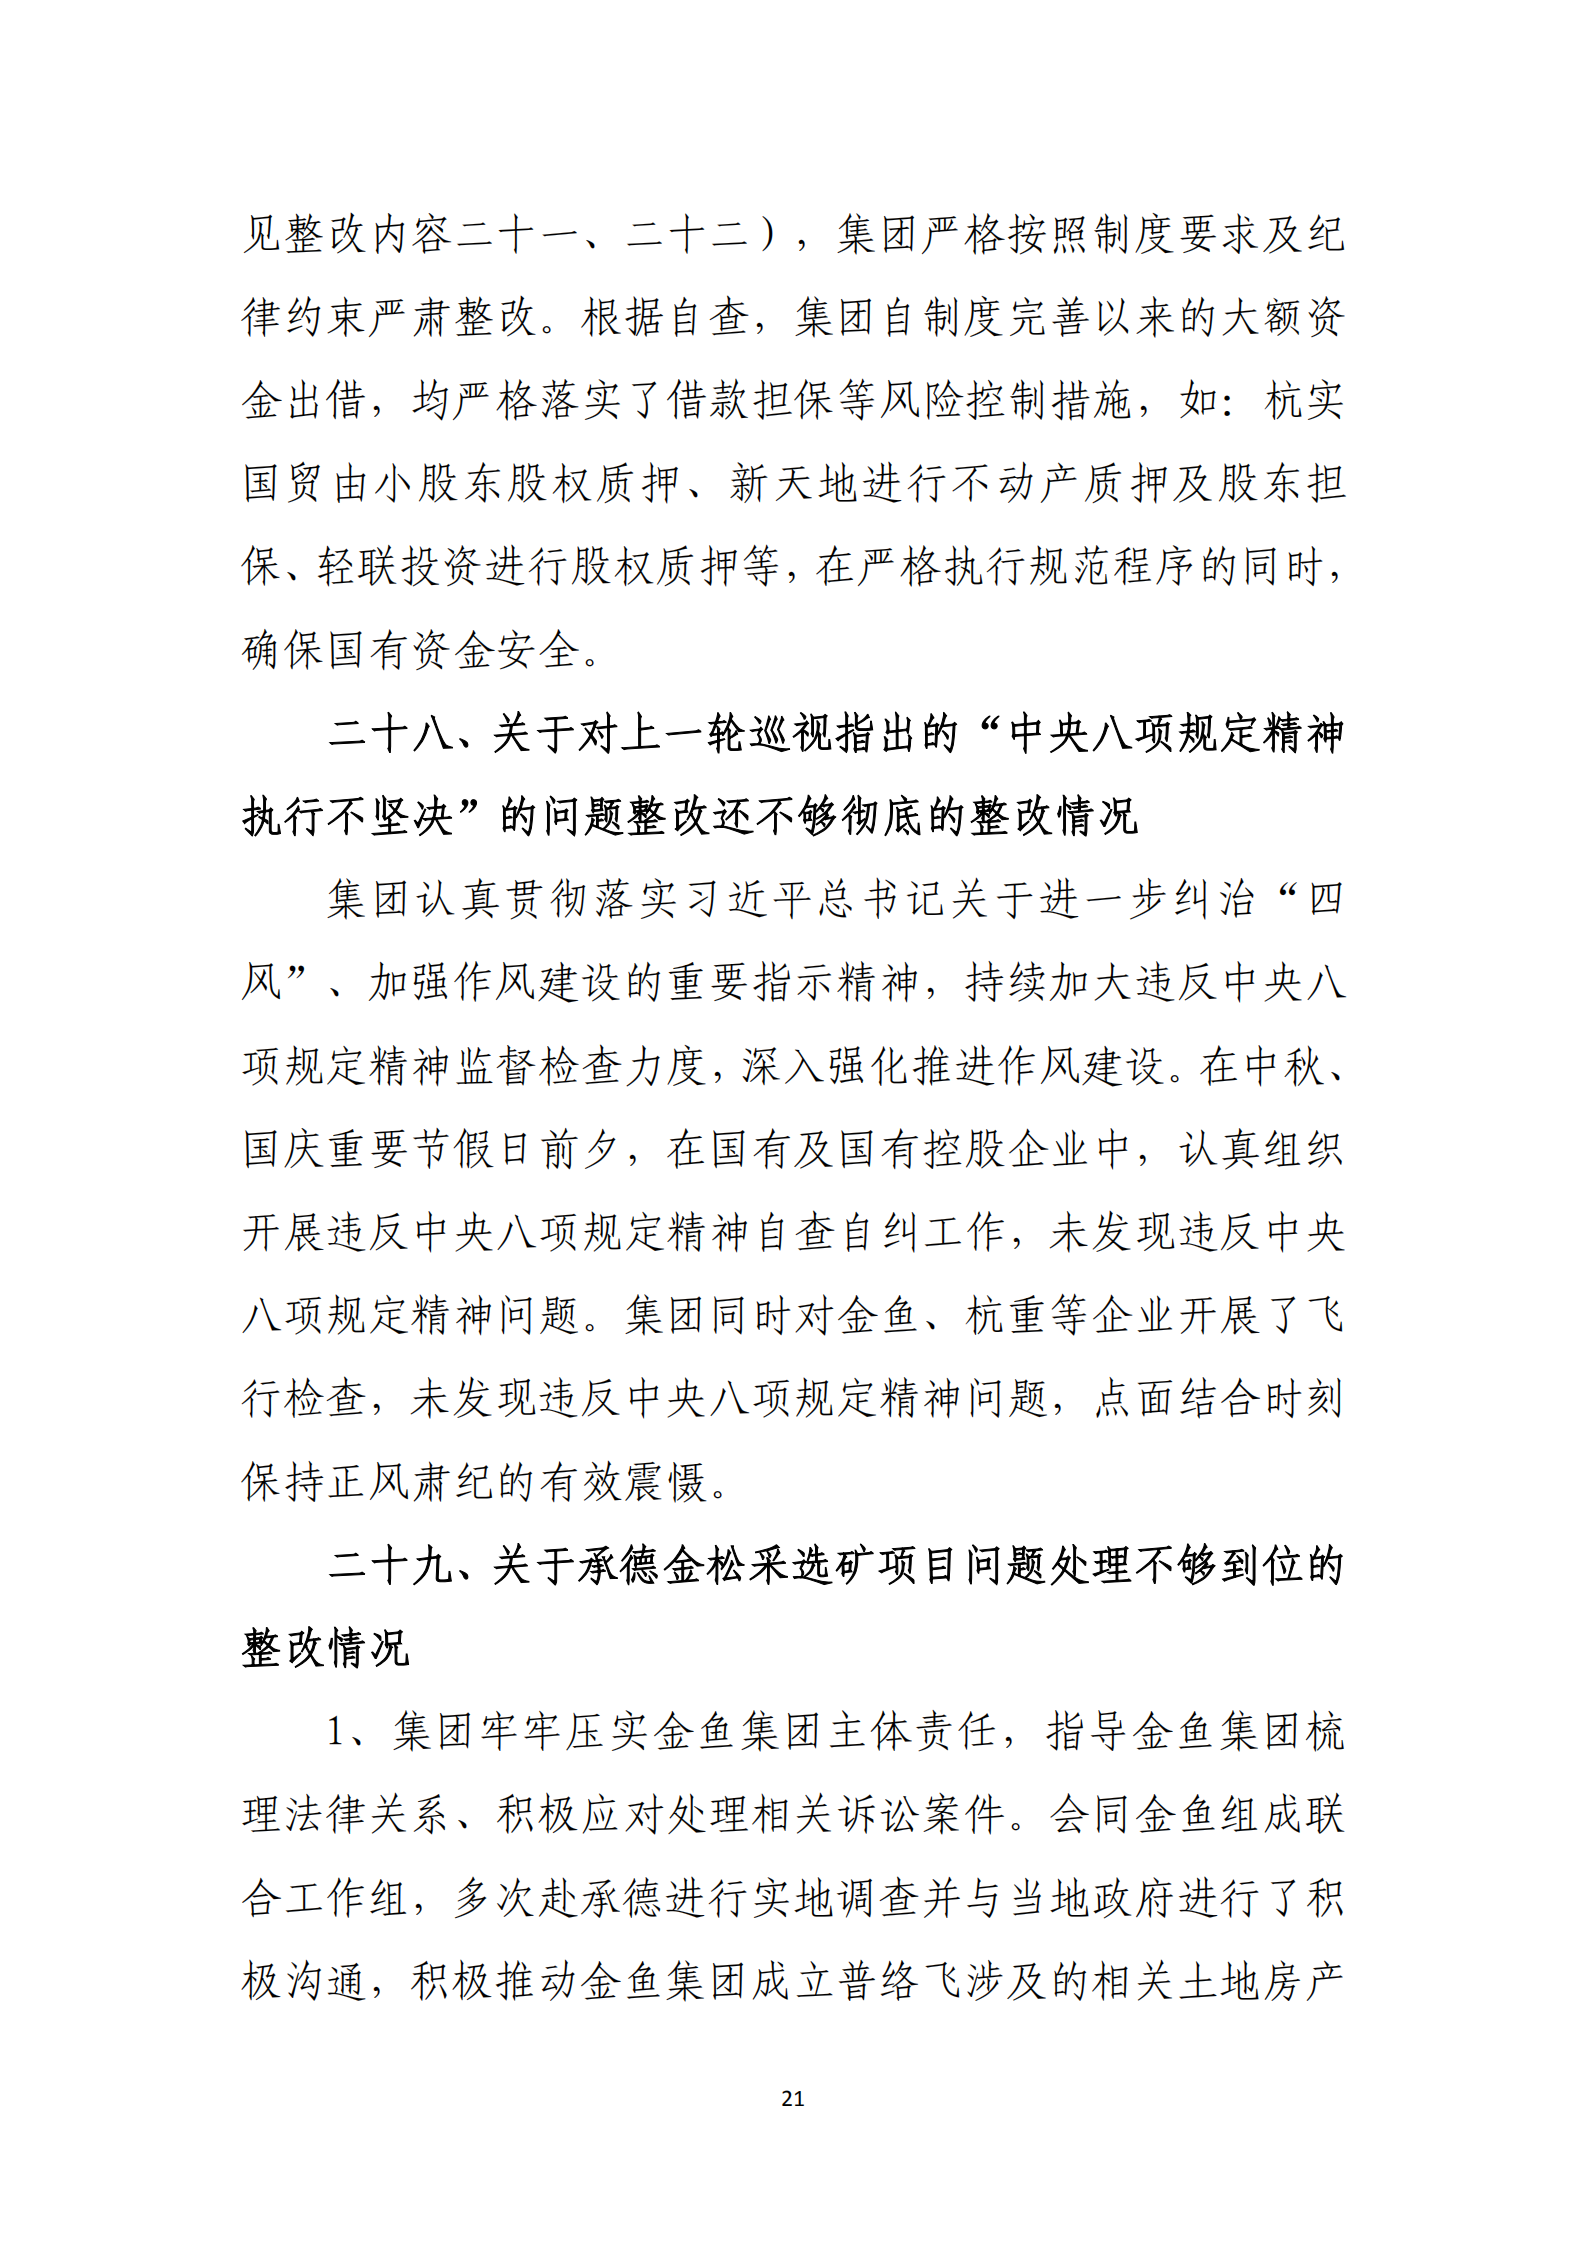 大阳城集团娱乐游戏党委关于巡察整改情况的通报_20.png